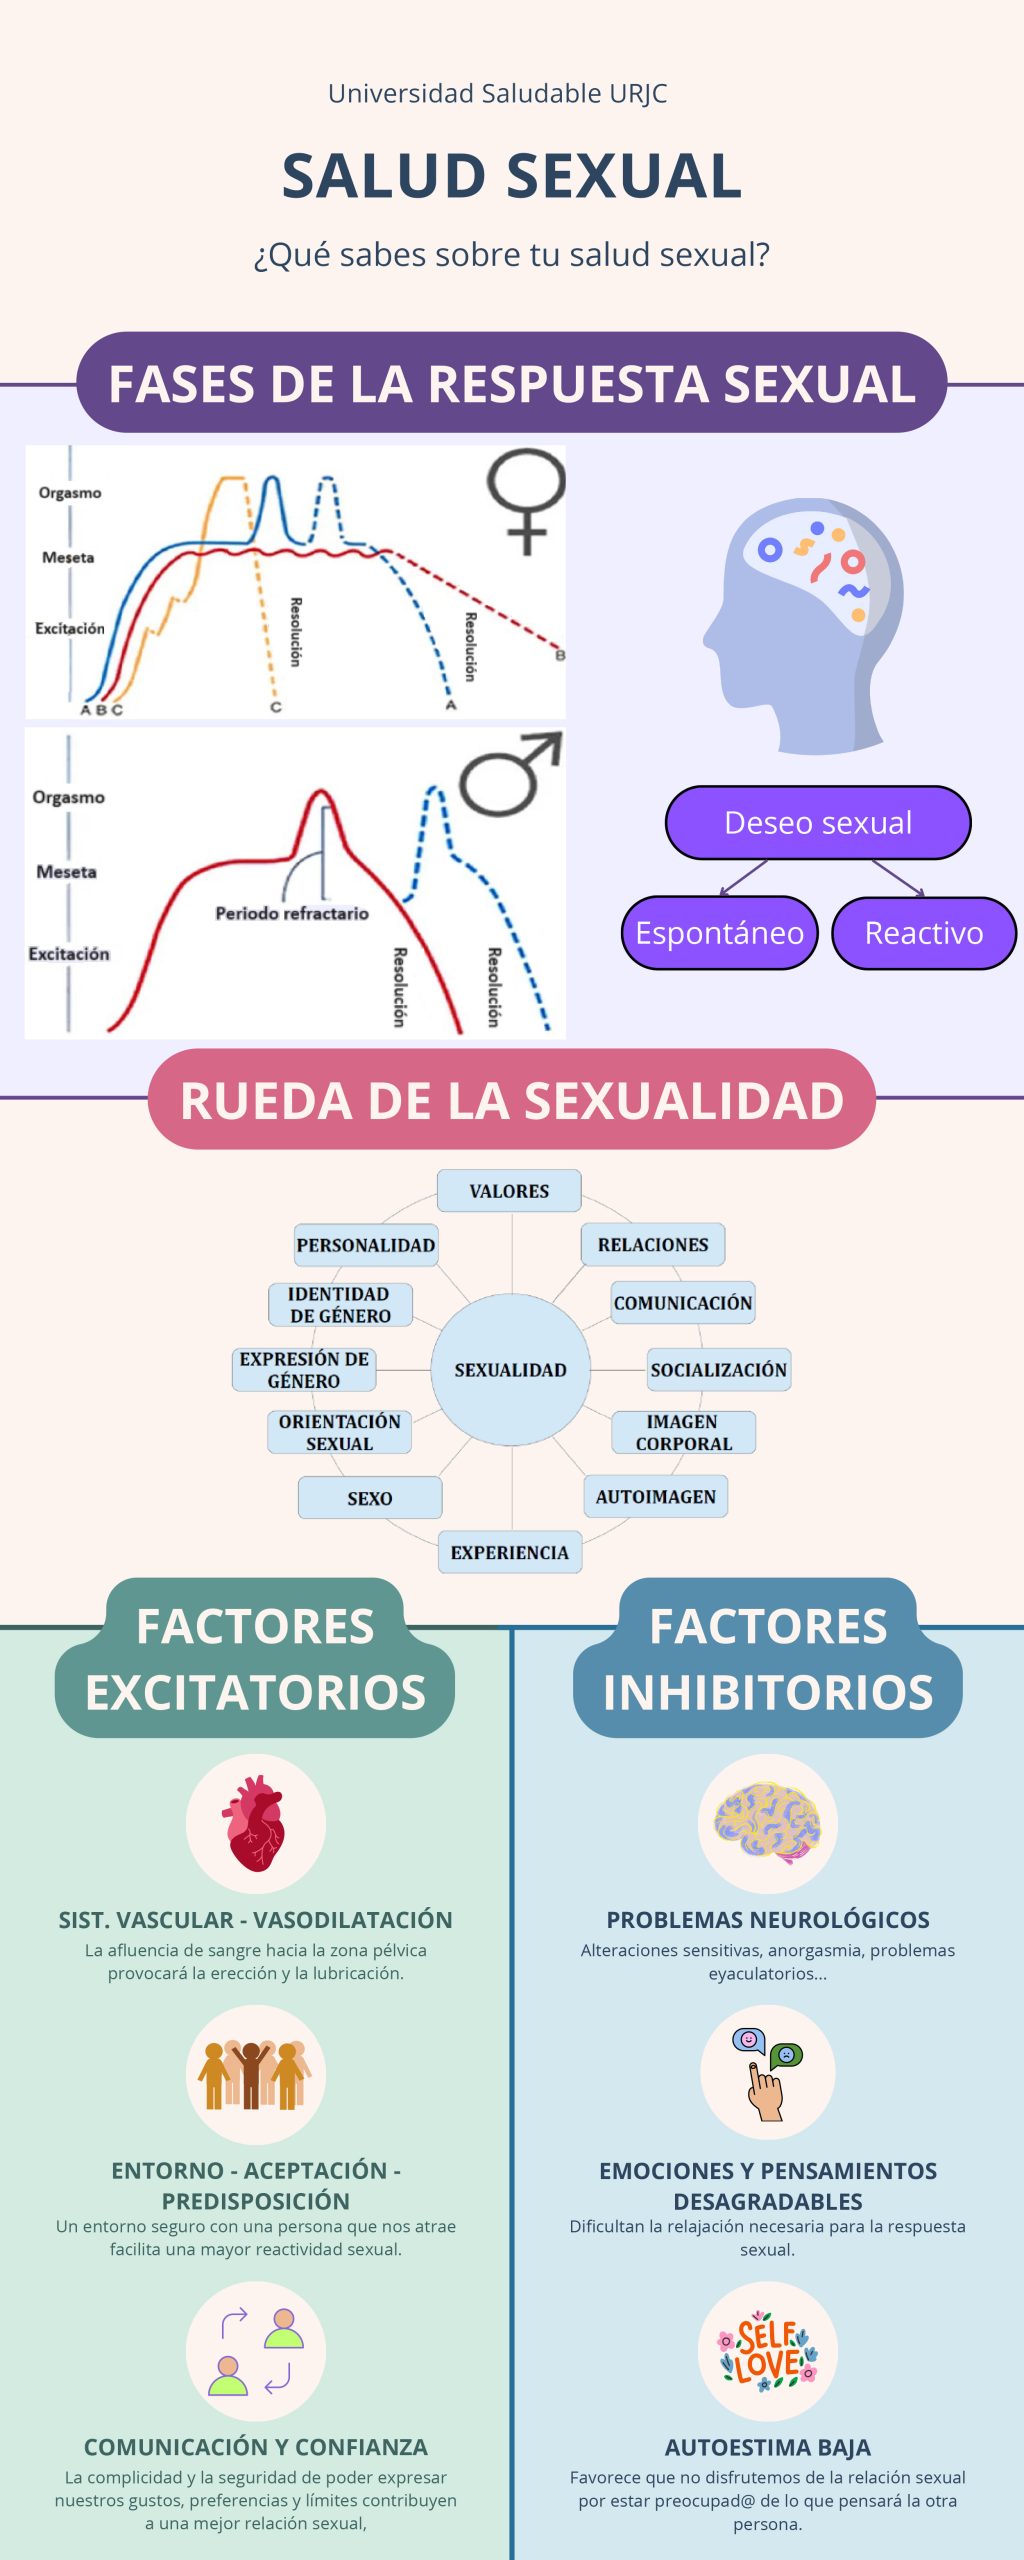 Salud sexual: Fases de la respuesta sexual